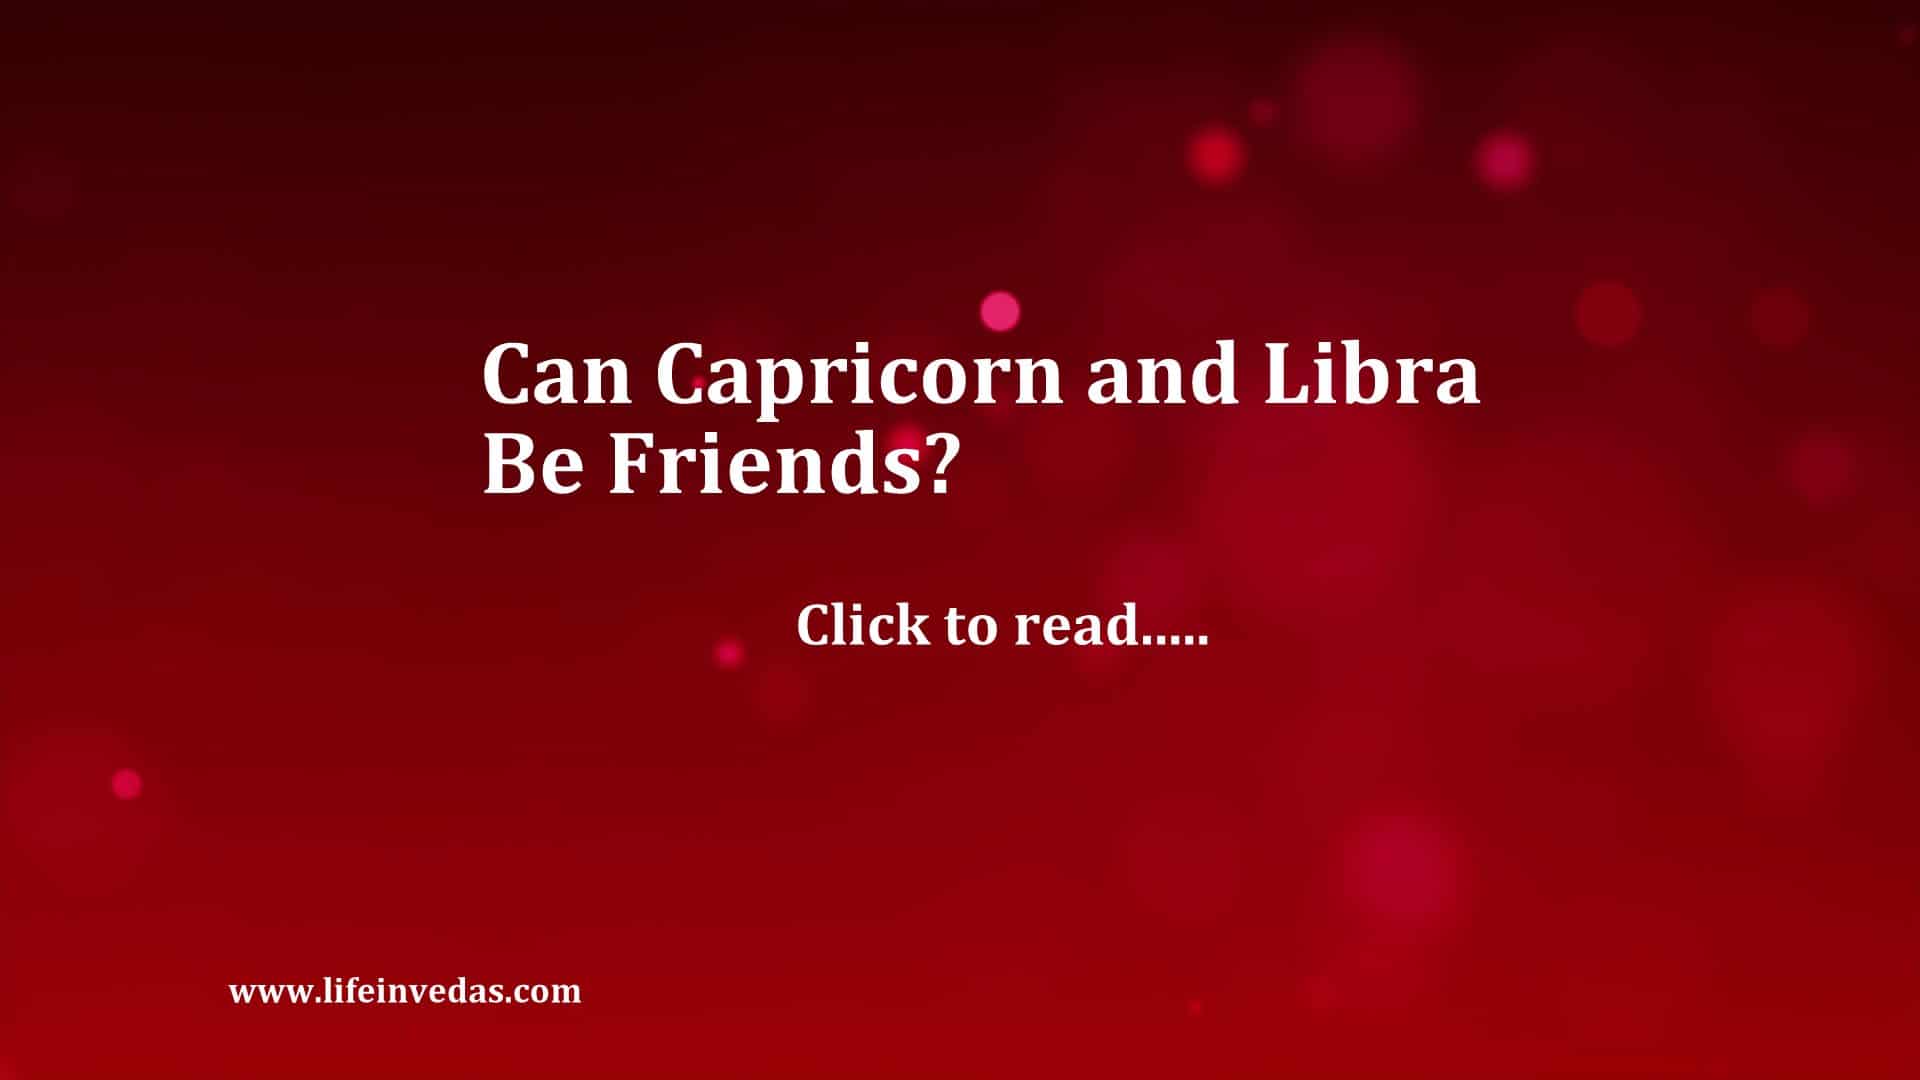 are Libra and Capricorn